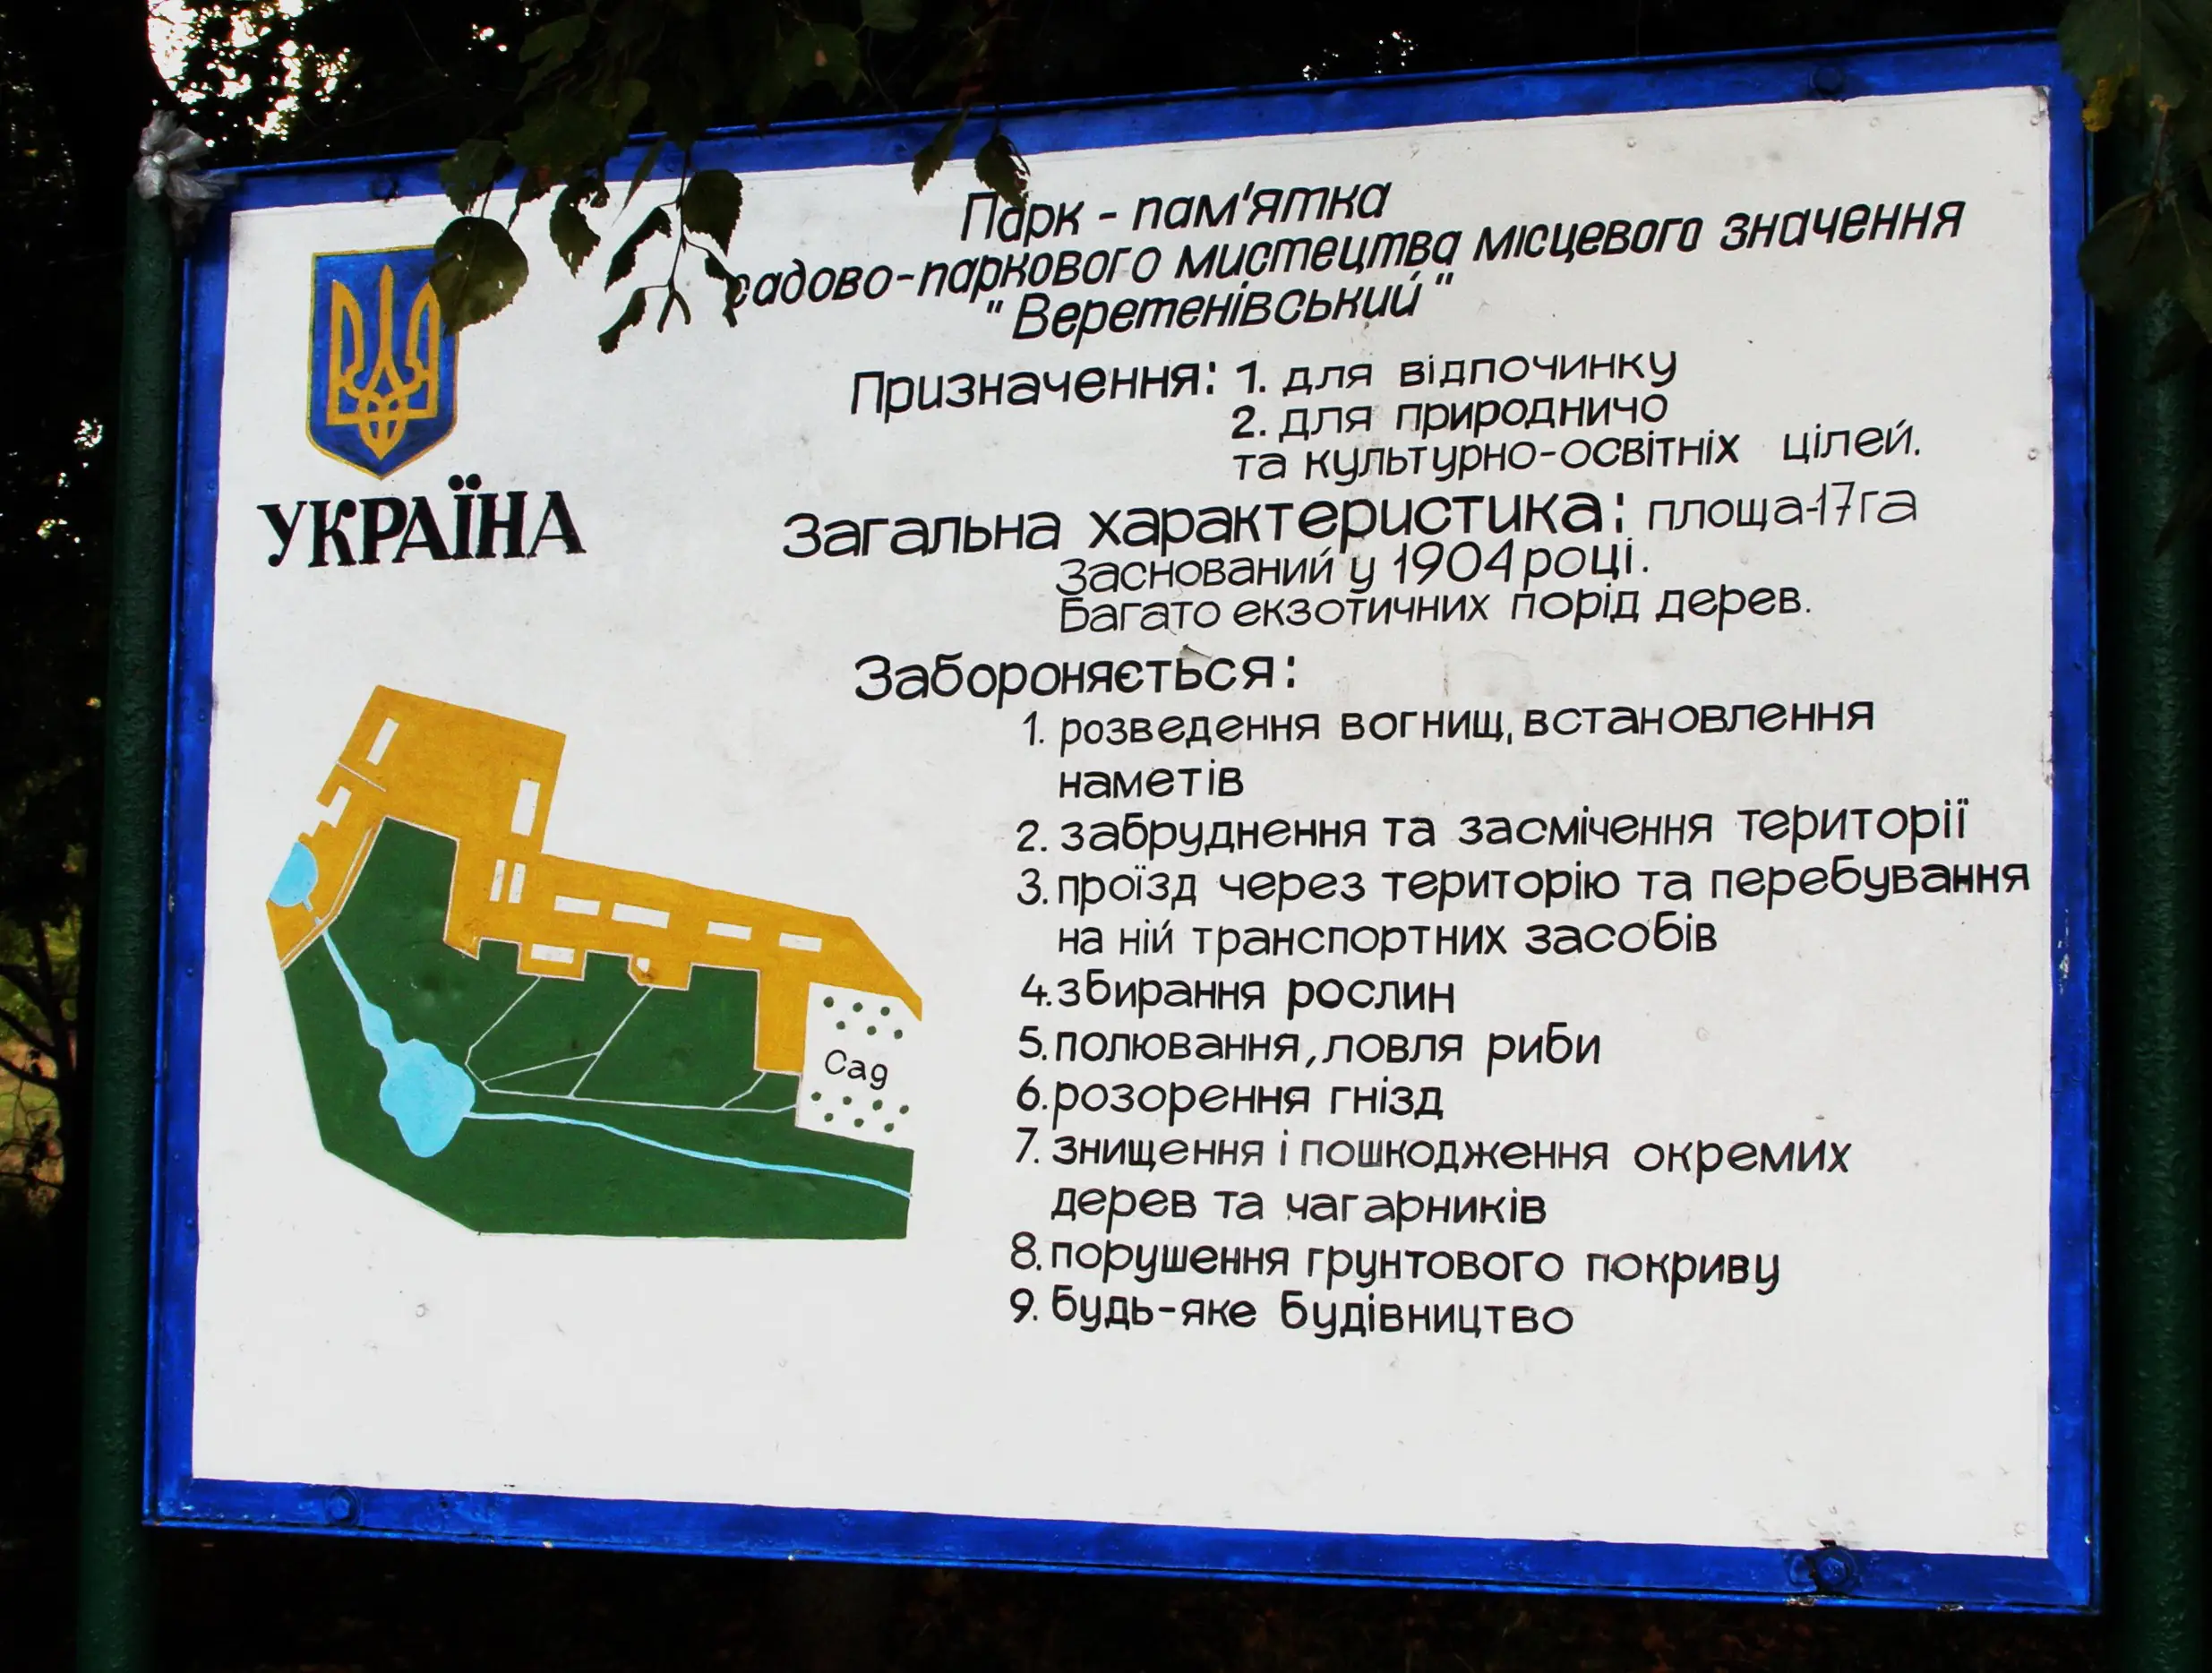 Схема парку та правила перебування. Фото: Myk Sadovyi